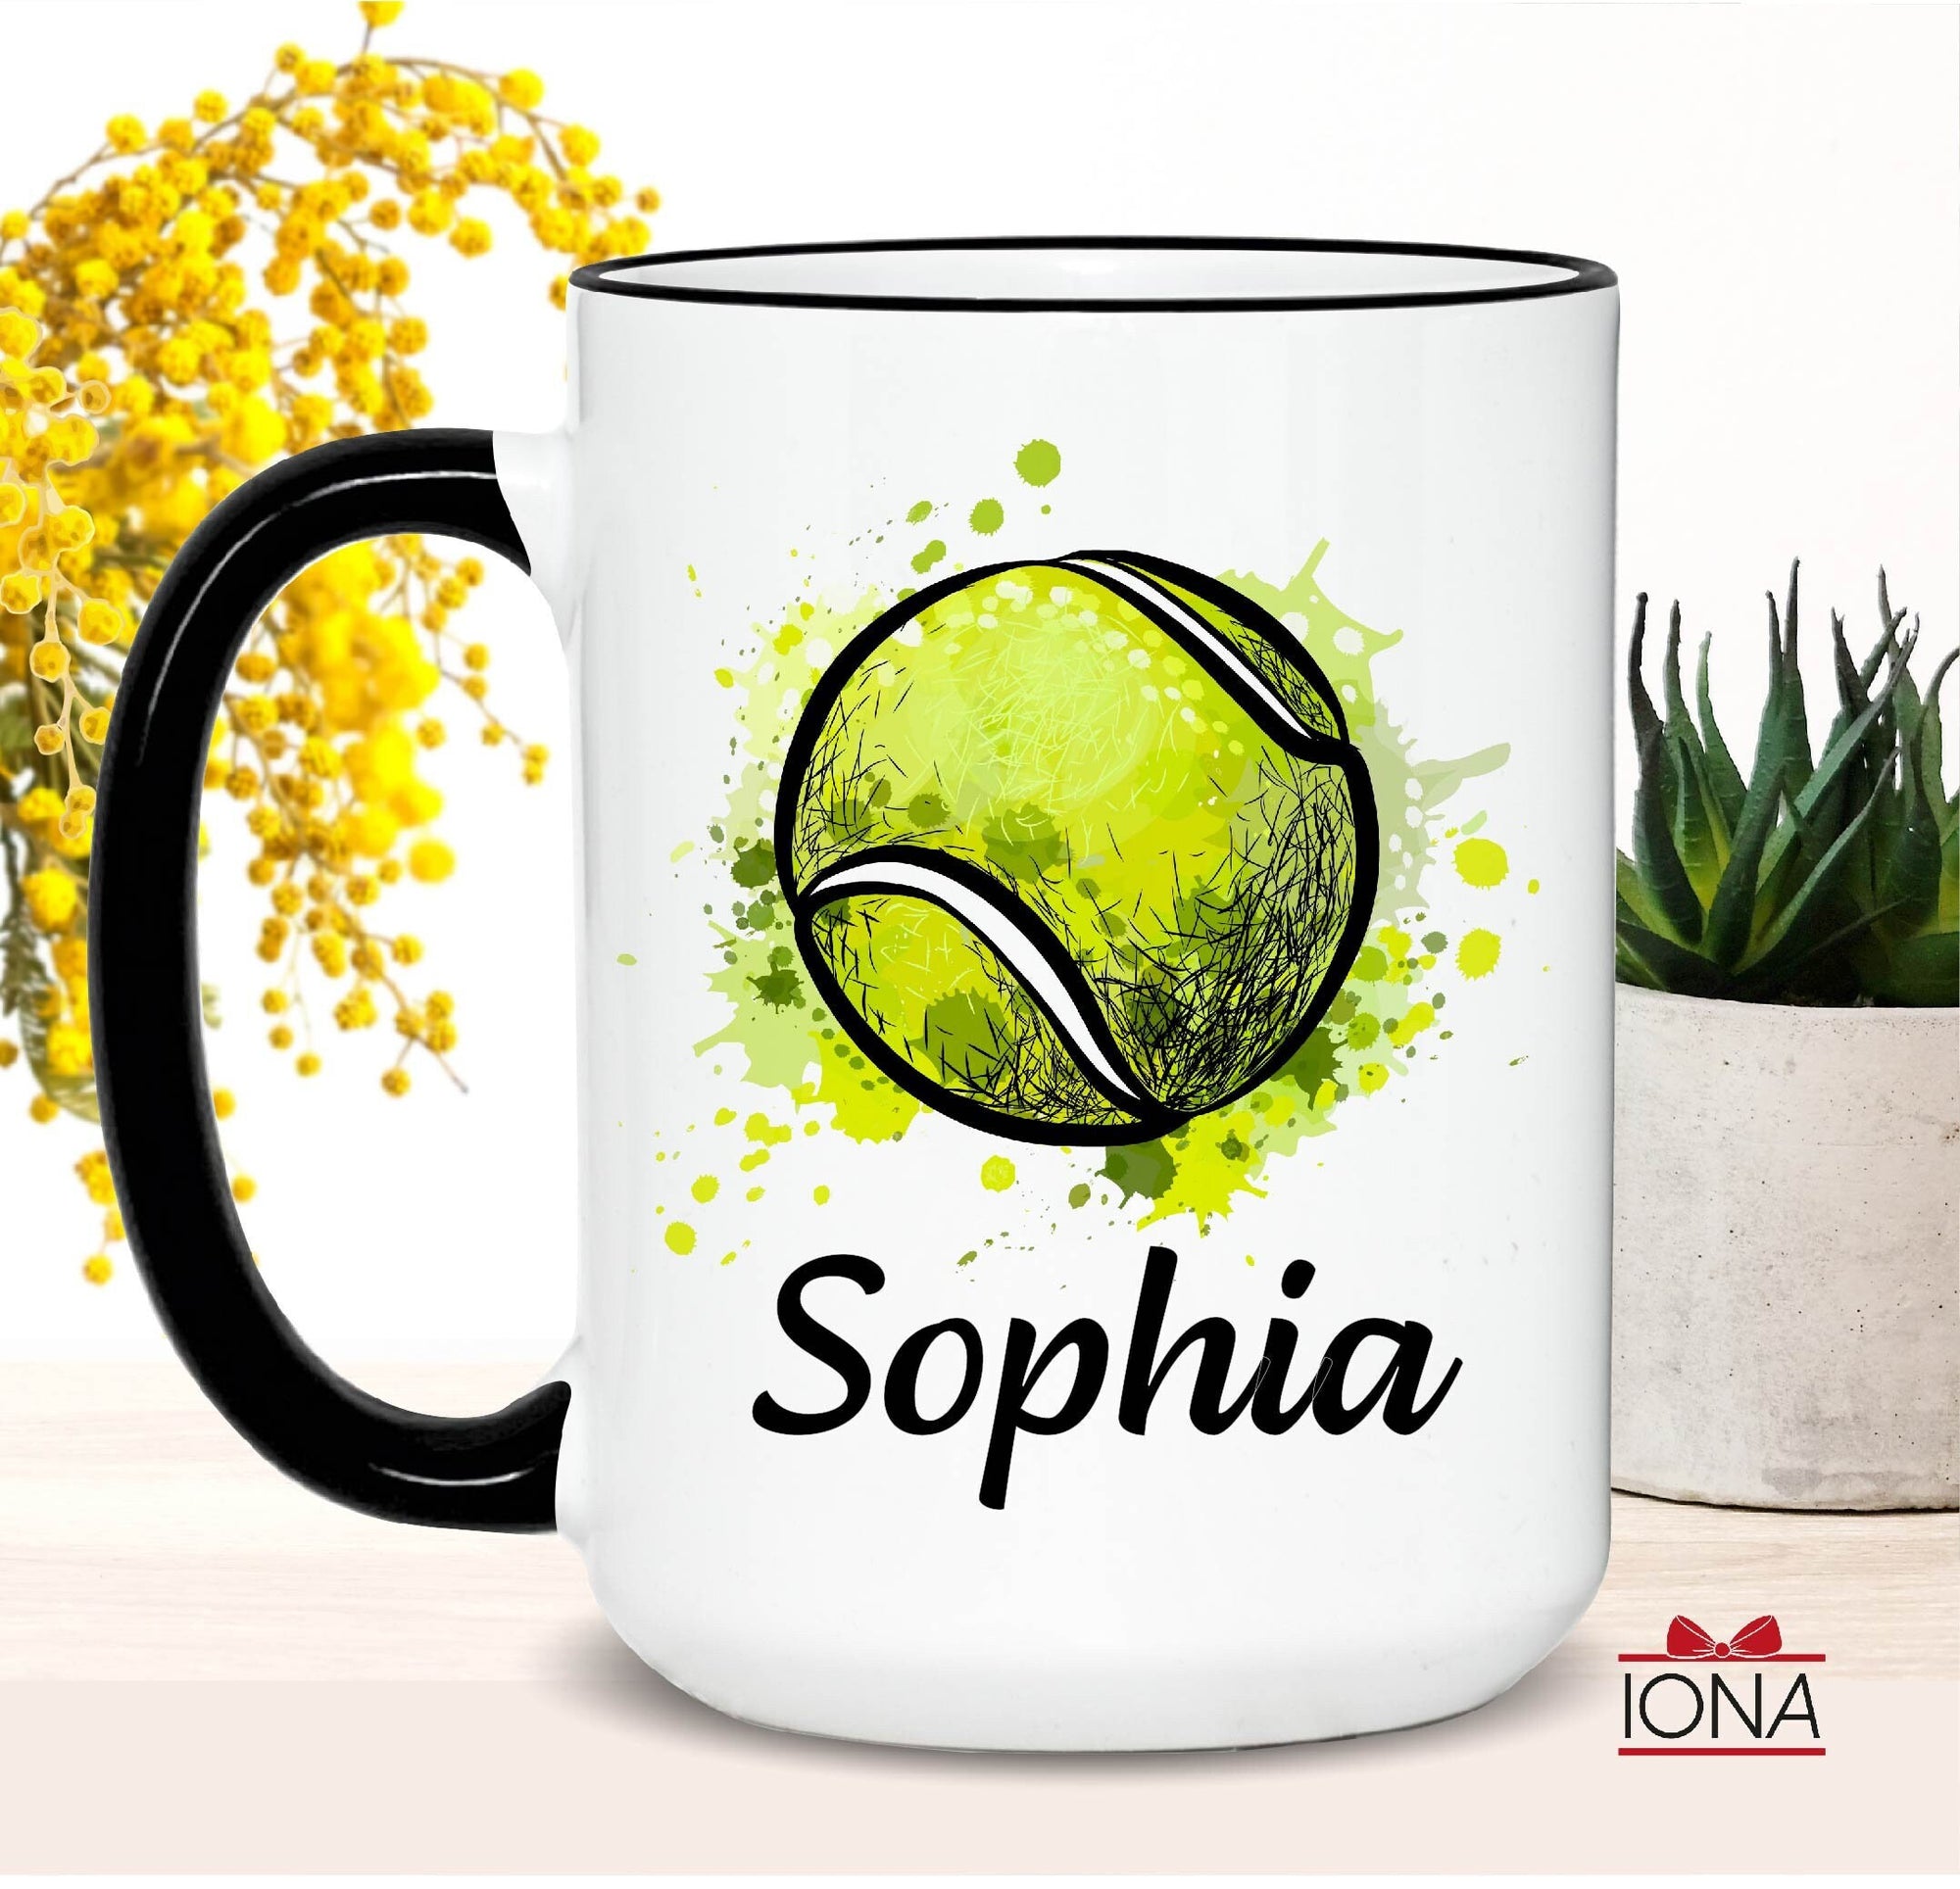 Personalized Tennis Coffee Mug, Tennis Player Gift, Tennis Coach Appreciation Gifts, Tennis Coffee Mug, Coach Mug, Coach Cup, Tennis Cup